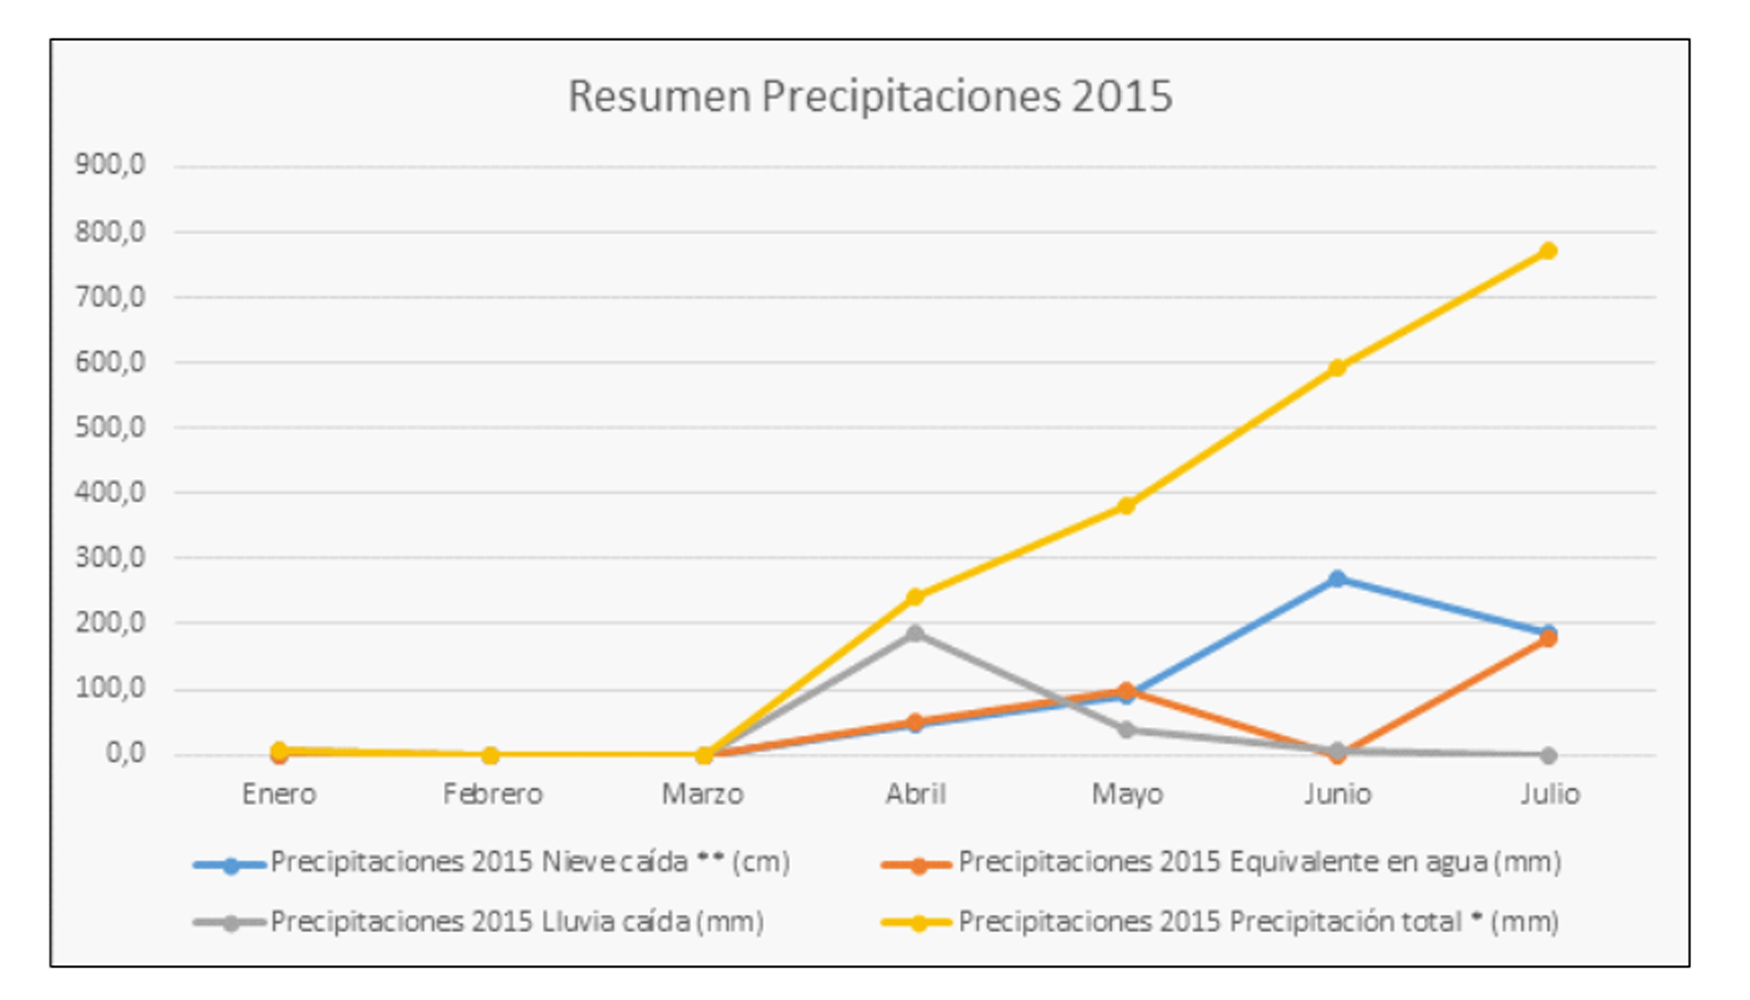 Resumen precipitaciones en el ao 2015